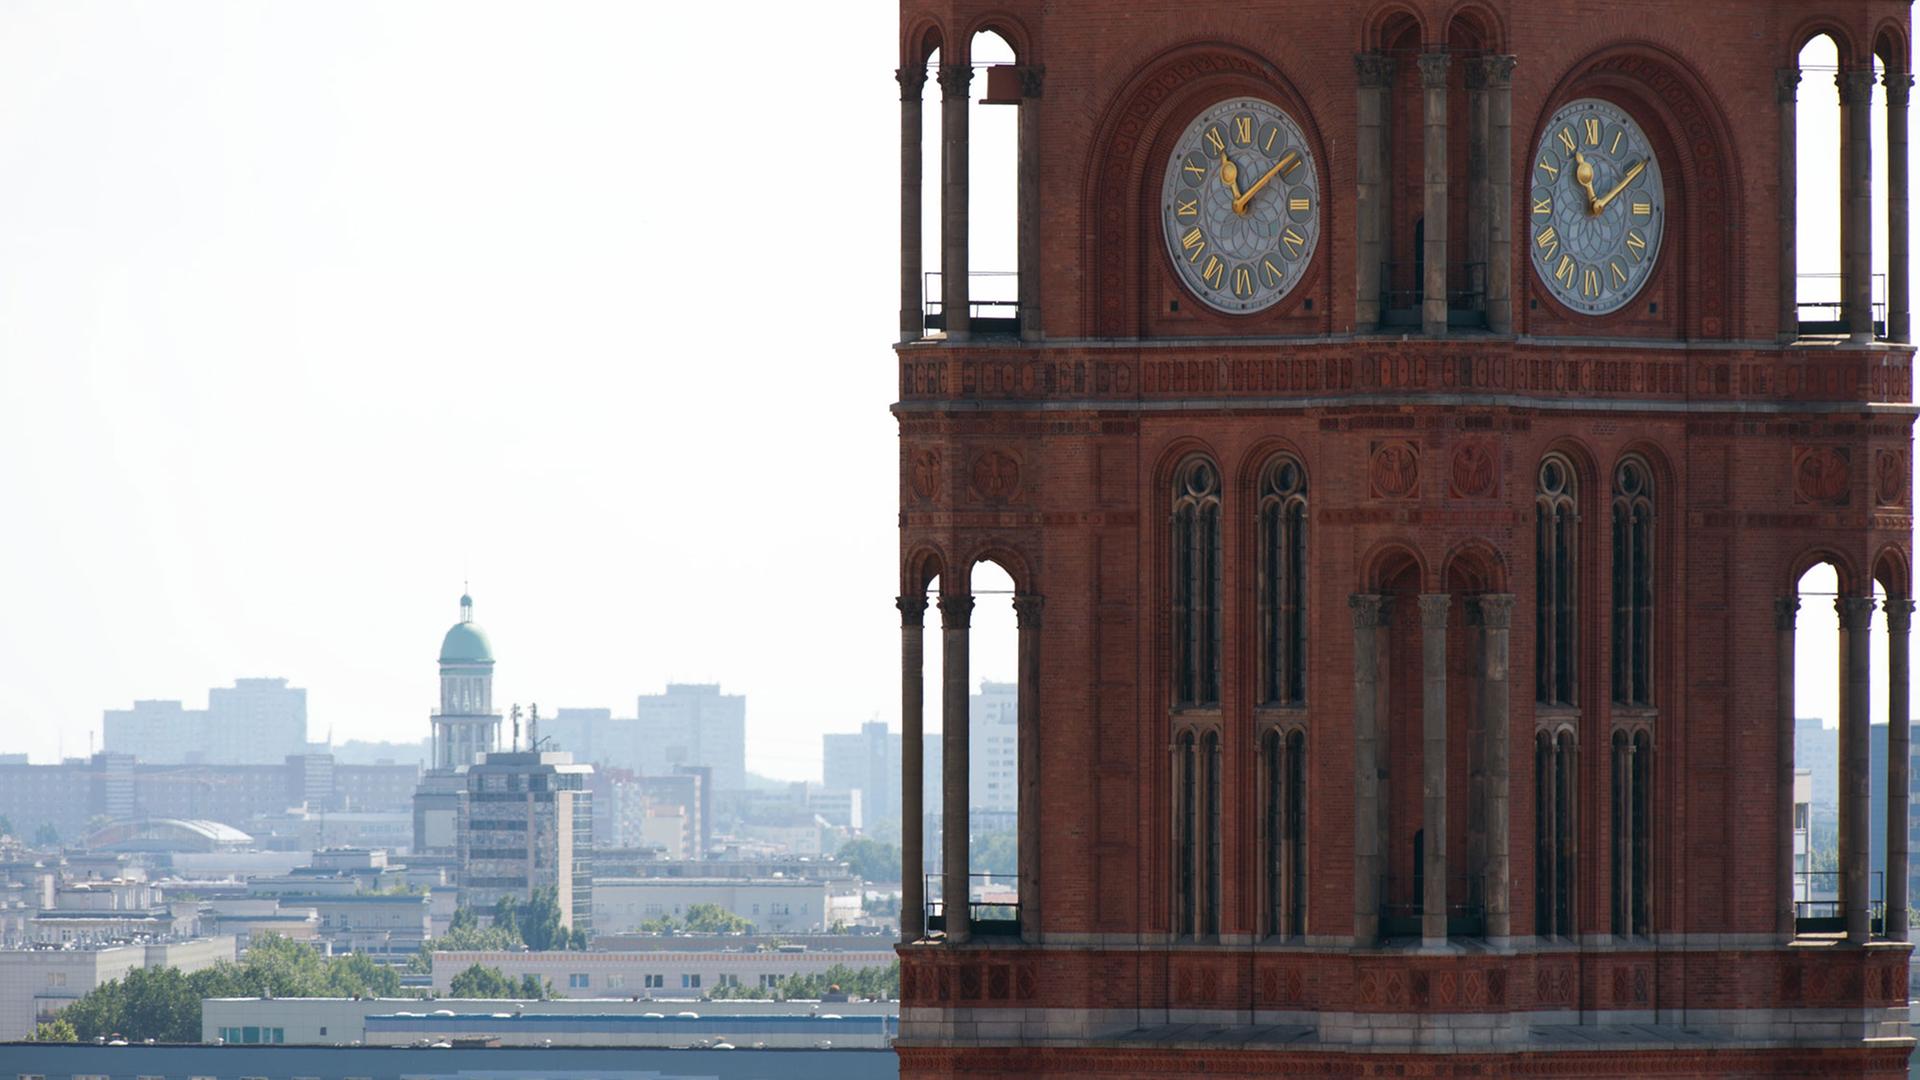 Der Turm mit den Uhren des Roten Rathauses in Berlin, im Hintergrund links einer der Türme am Frankfurter Tor, aufgenommen am 23.07.2014.